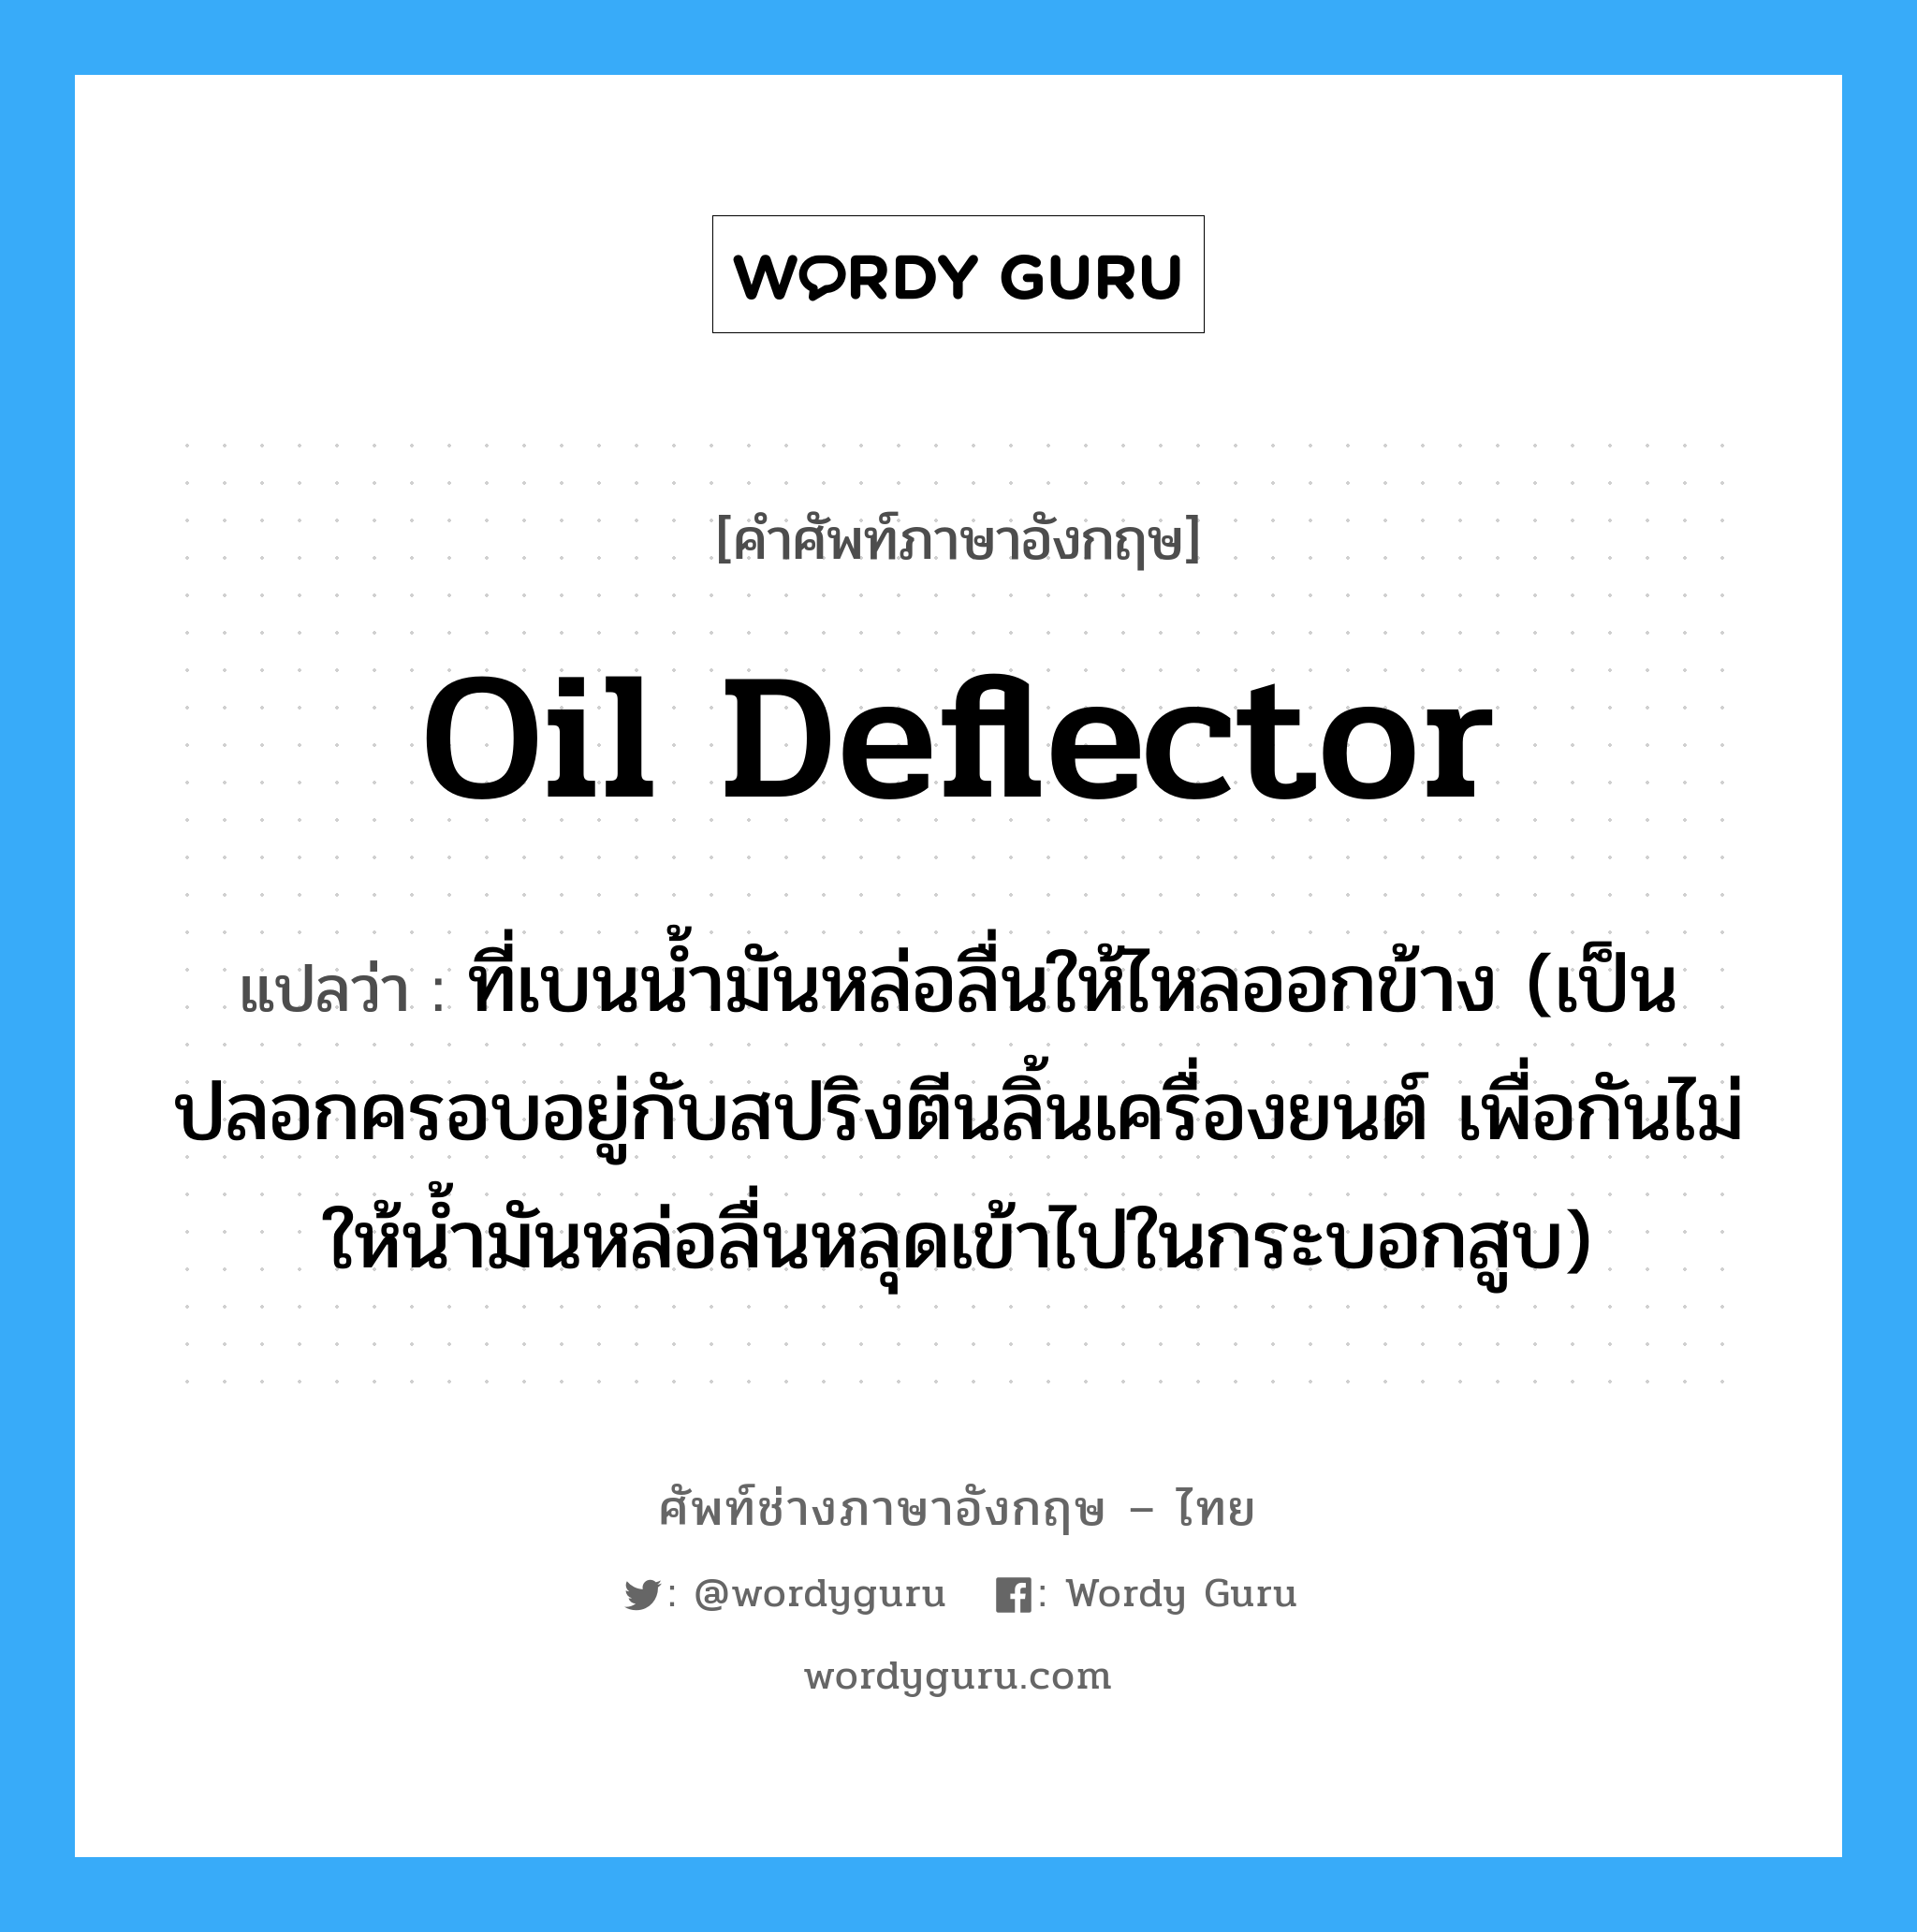 oil deflector แปลว่า?, คำศัพท์ช่างภาษาอังกฤษ - ไทย oil deflector คำศัพท์ภาษาอังกฤษ oil deflector แปลว่า ที่เบนน้ำมันหล่อลื่นให้ไหลออกข้าง (เป็นปลอกครอบอยู่กับสปริงตีนลิ้นเครื่องยนต์ เพื่อกันไม่ให้น้ำมันหล่อลื่นหลุดเข้าไปในกระบอกสูบ)